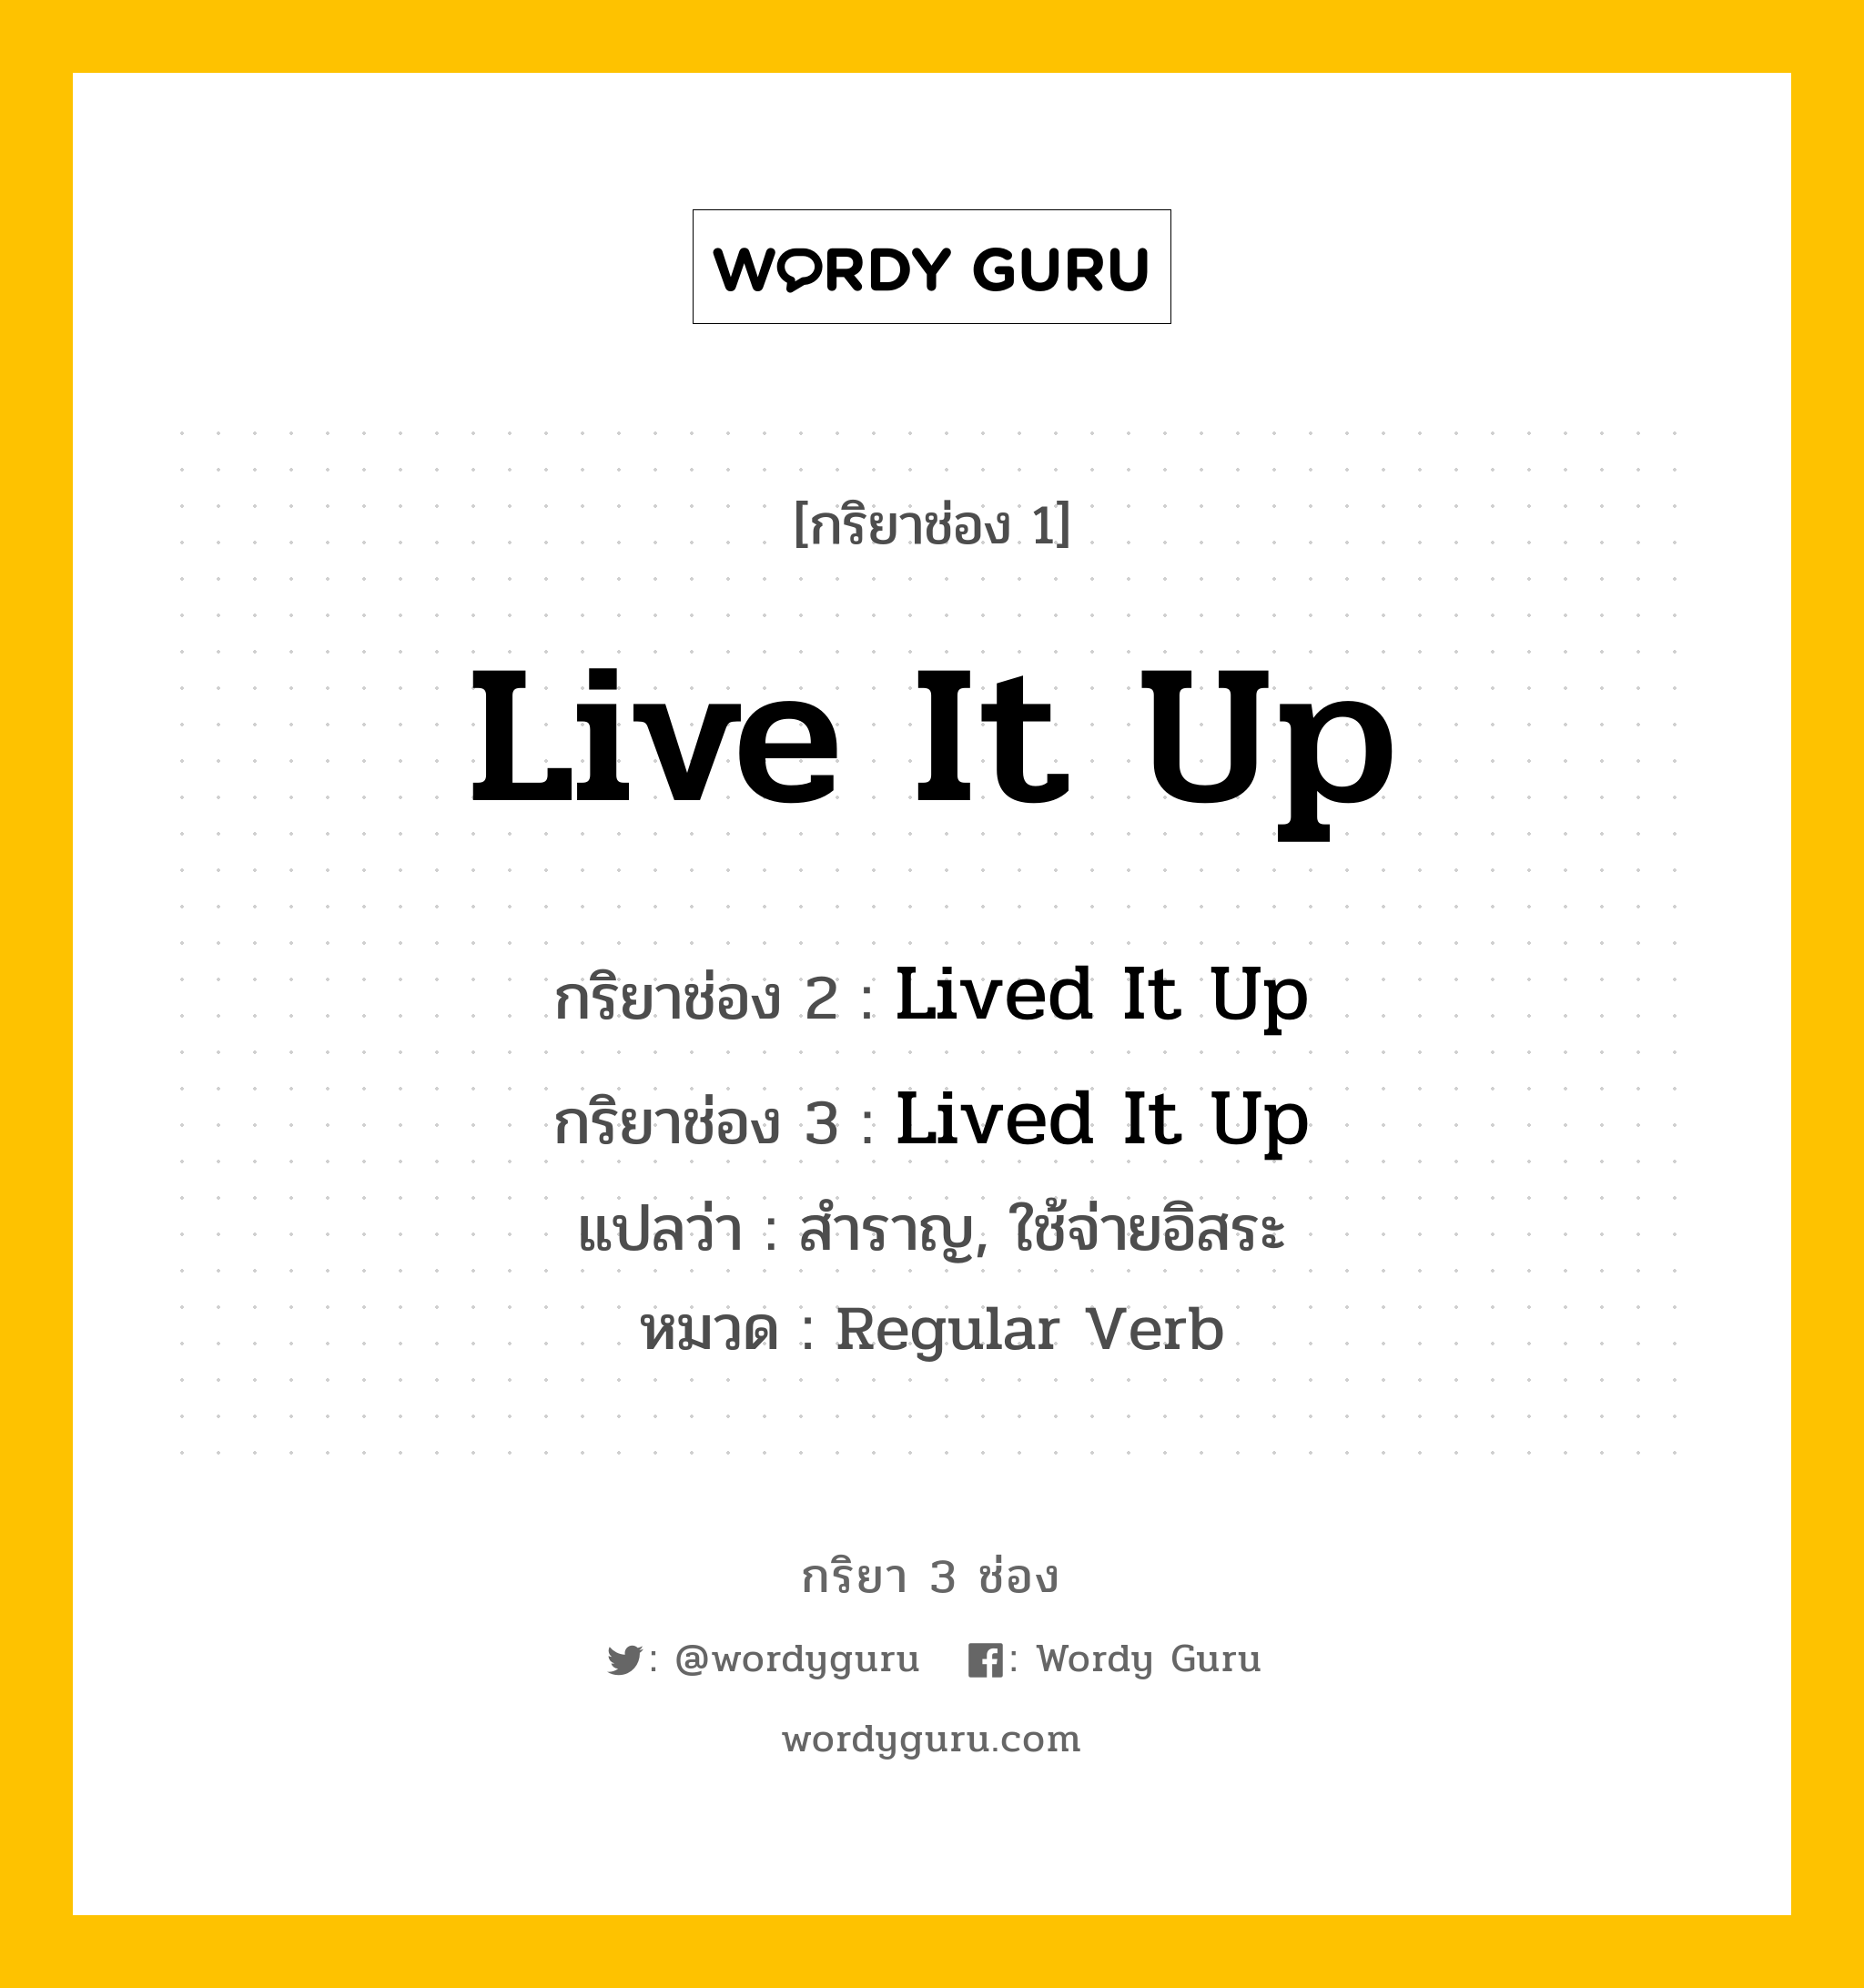 กริยา 3 ช่อง: Live It Up ช่อง 2 Live It Up ช่อง 3 คืออะไร, กริยาช่อง 1 Live It Up กริยาช่อง 2 Lived It Up กริยาช่อง 3 Lived It Up แปลว่า สำราญ, ใช้จ่ายอิสระ หมวด Regular Verb หมวด Regular Verb